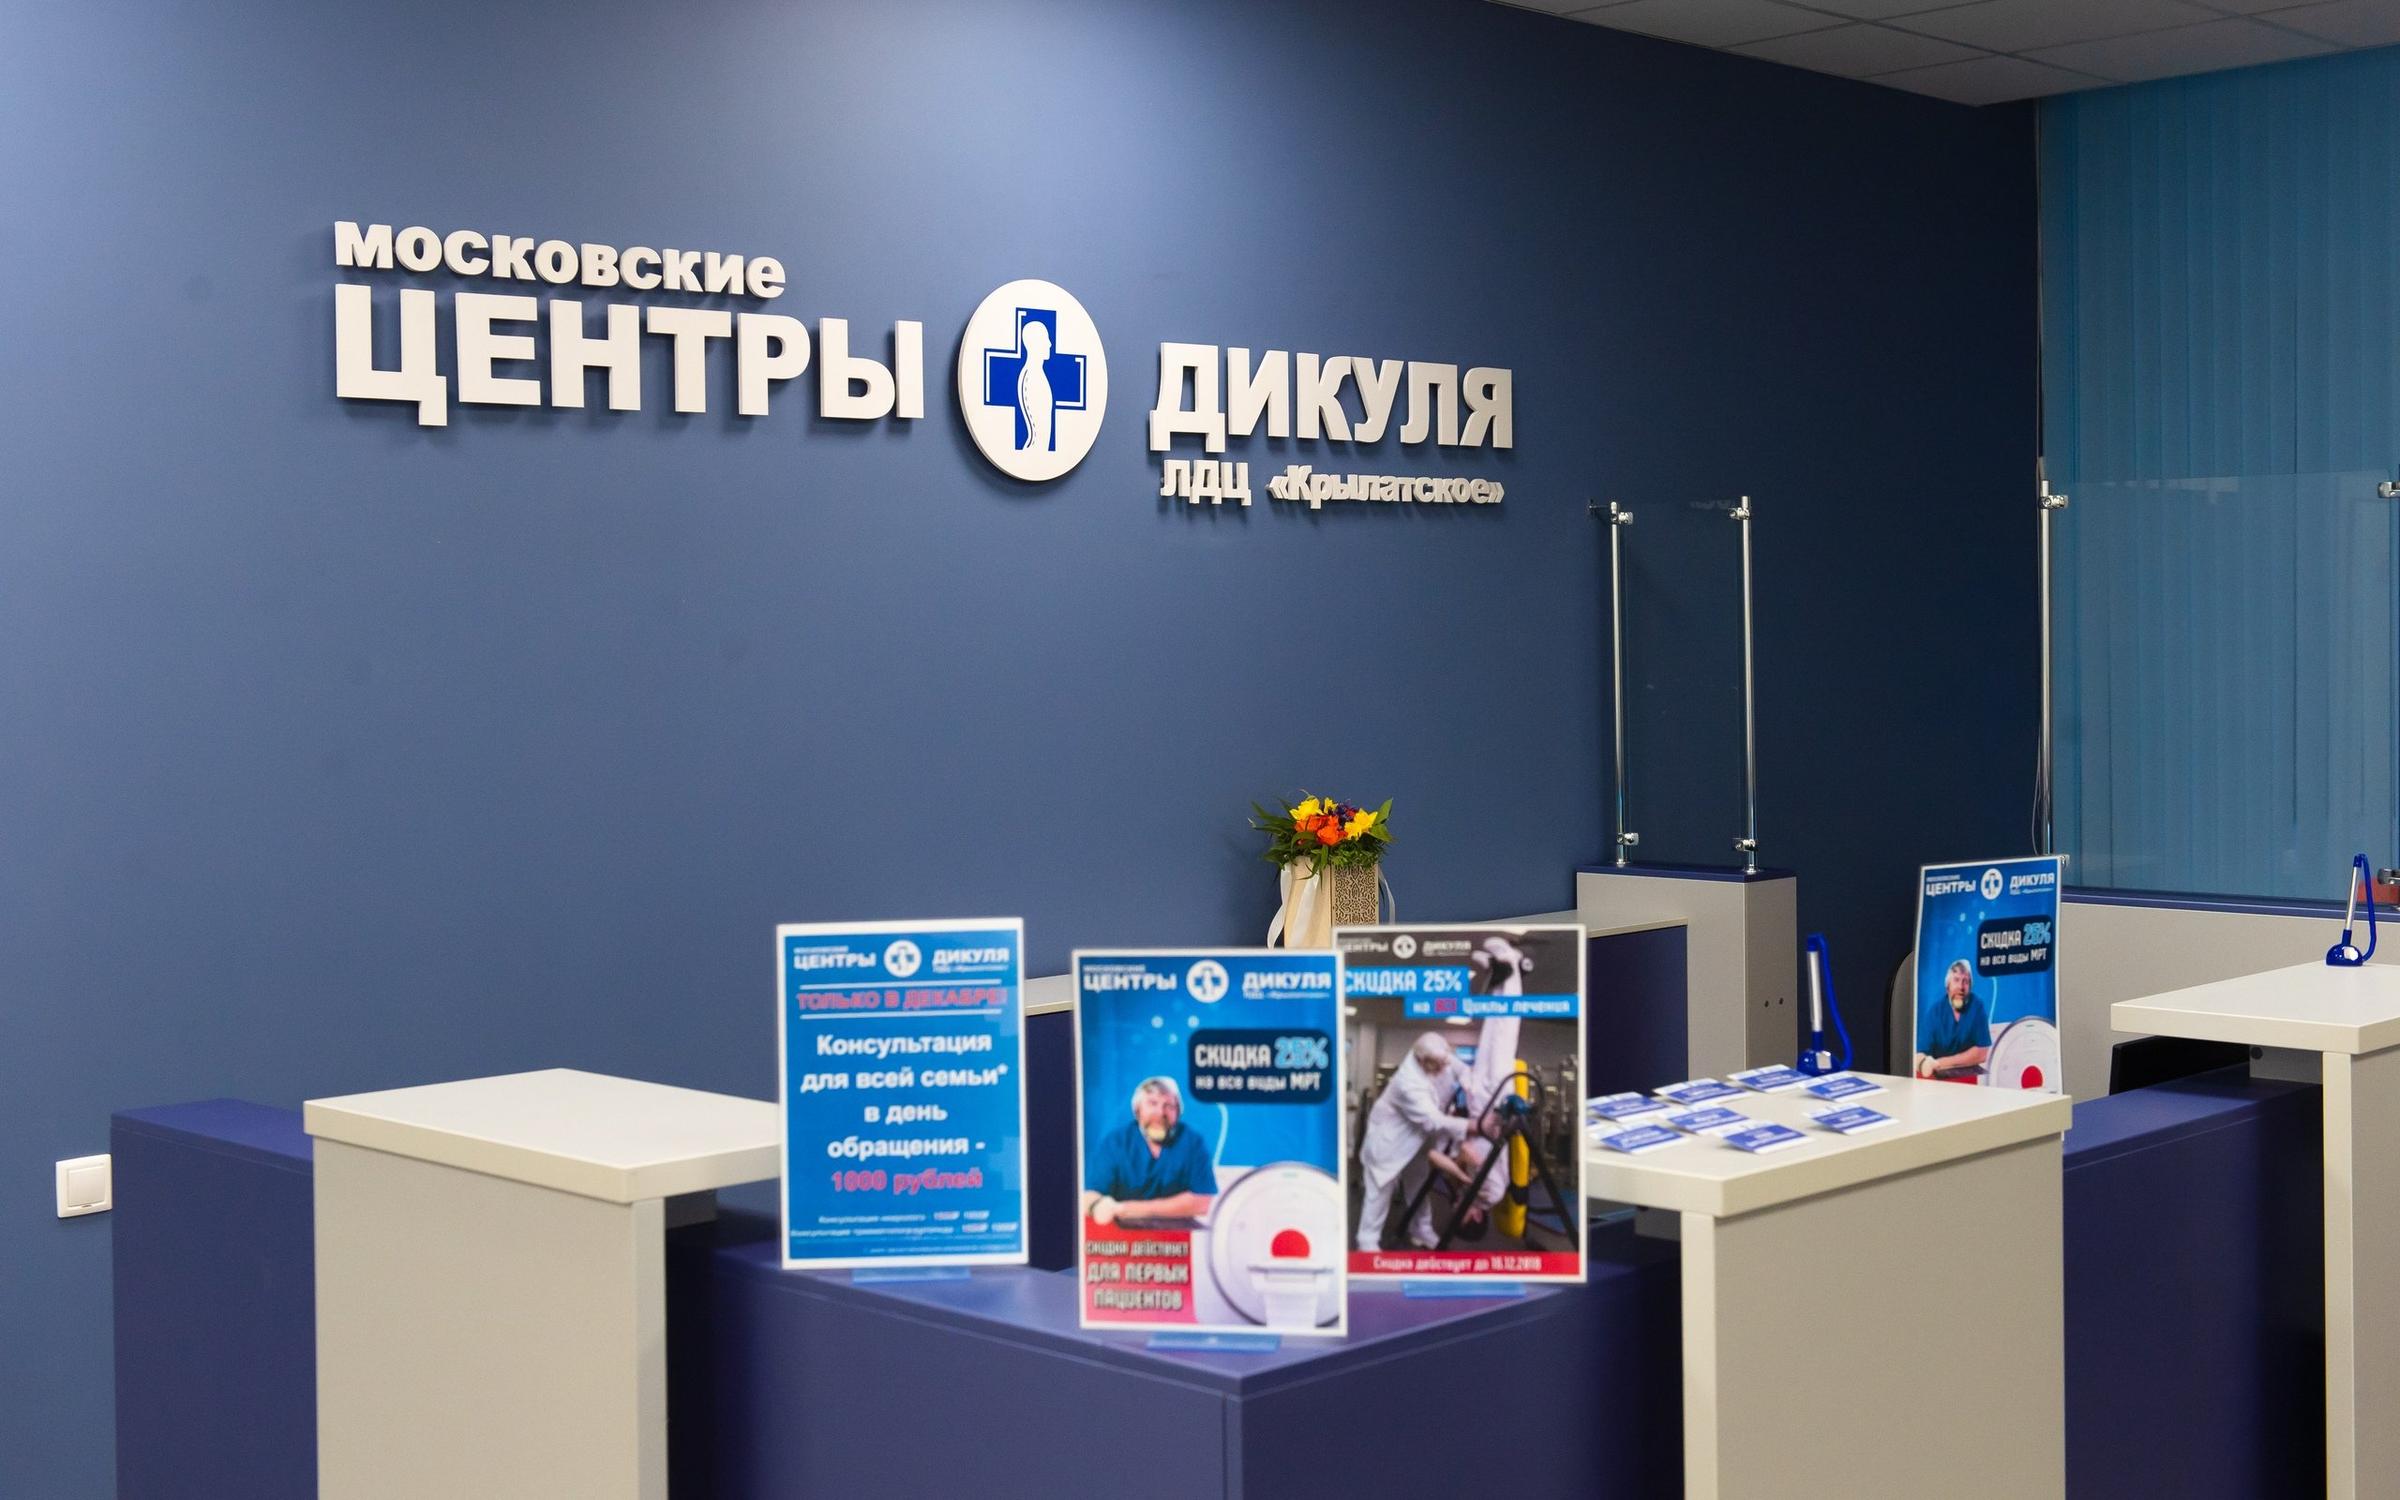 Клиника дикуля в москве официальный сайт цены 2020